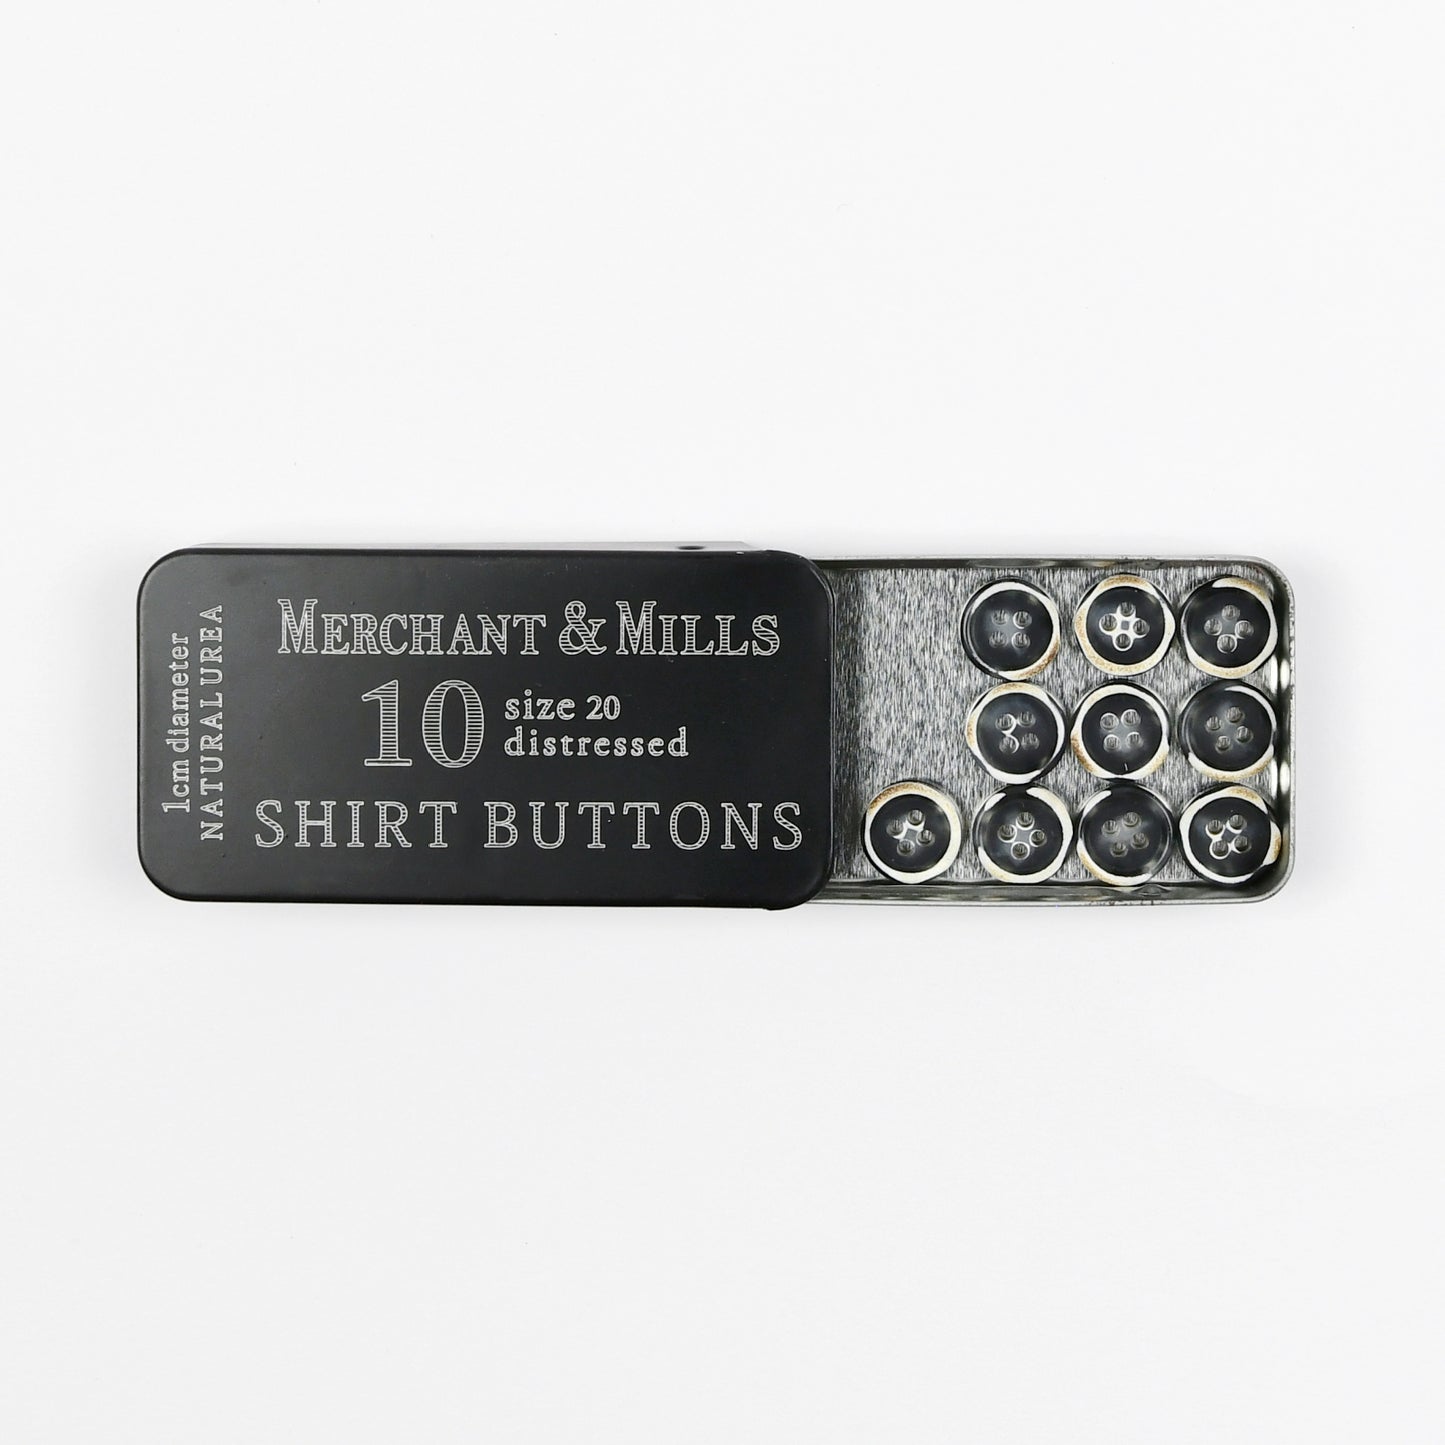 Shirt Buttons box